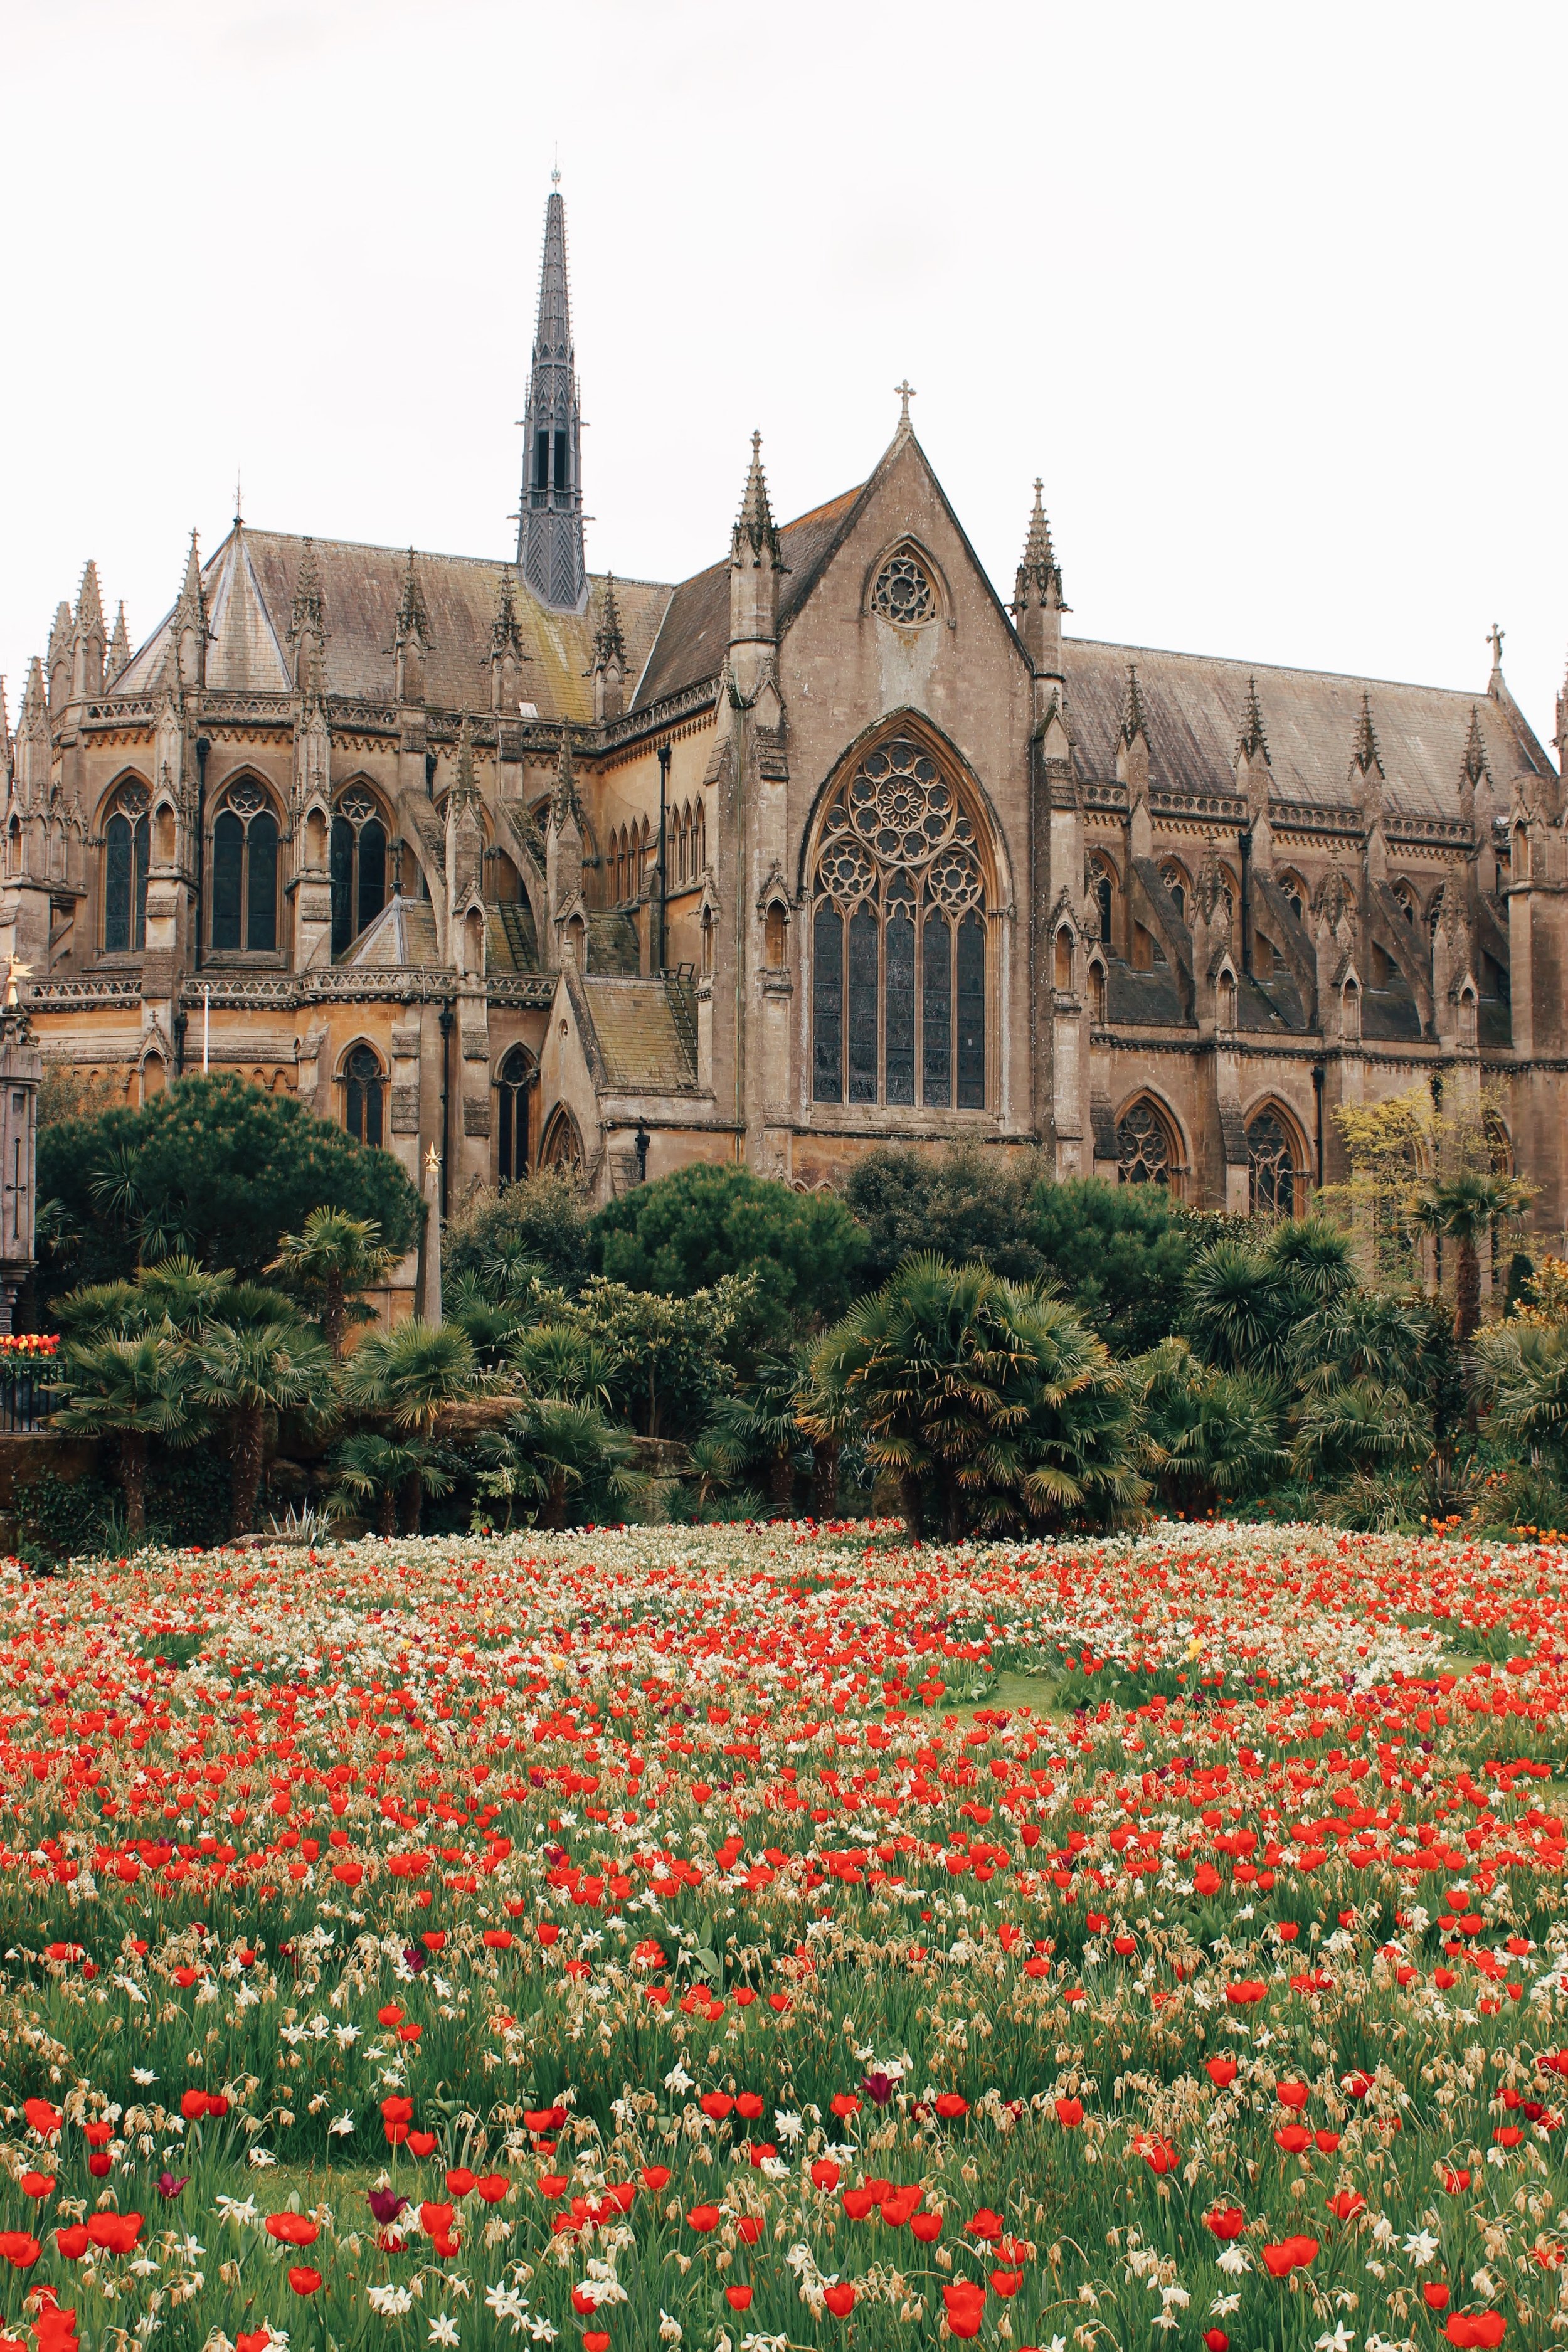 arundel castle garden tulips16.jpg